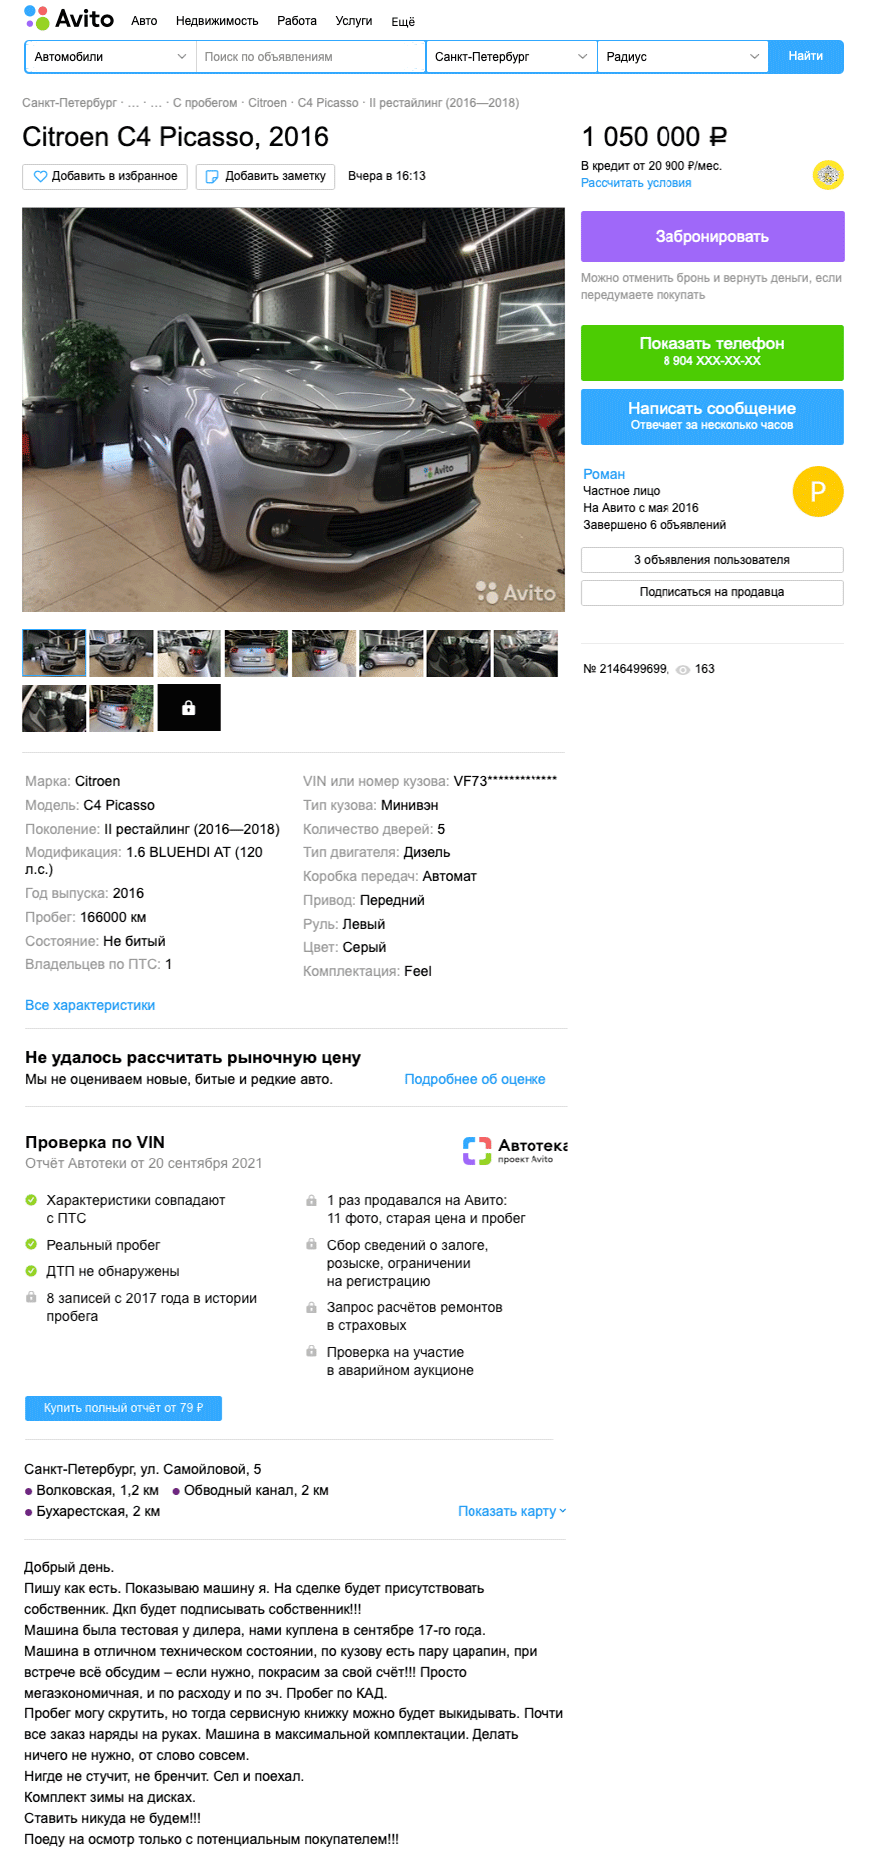 Настоящий вэн по цене Ларгуса: стоит ли покупать Citroen C4 Picasso II за 1 миллион рублей